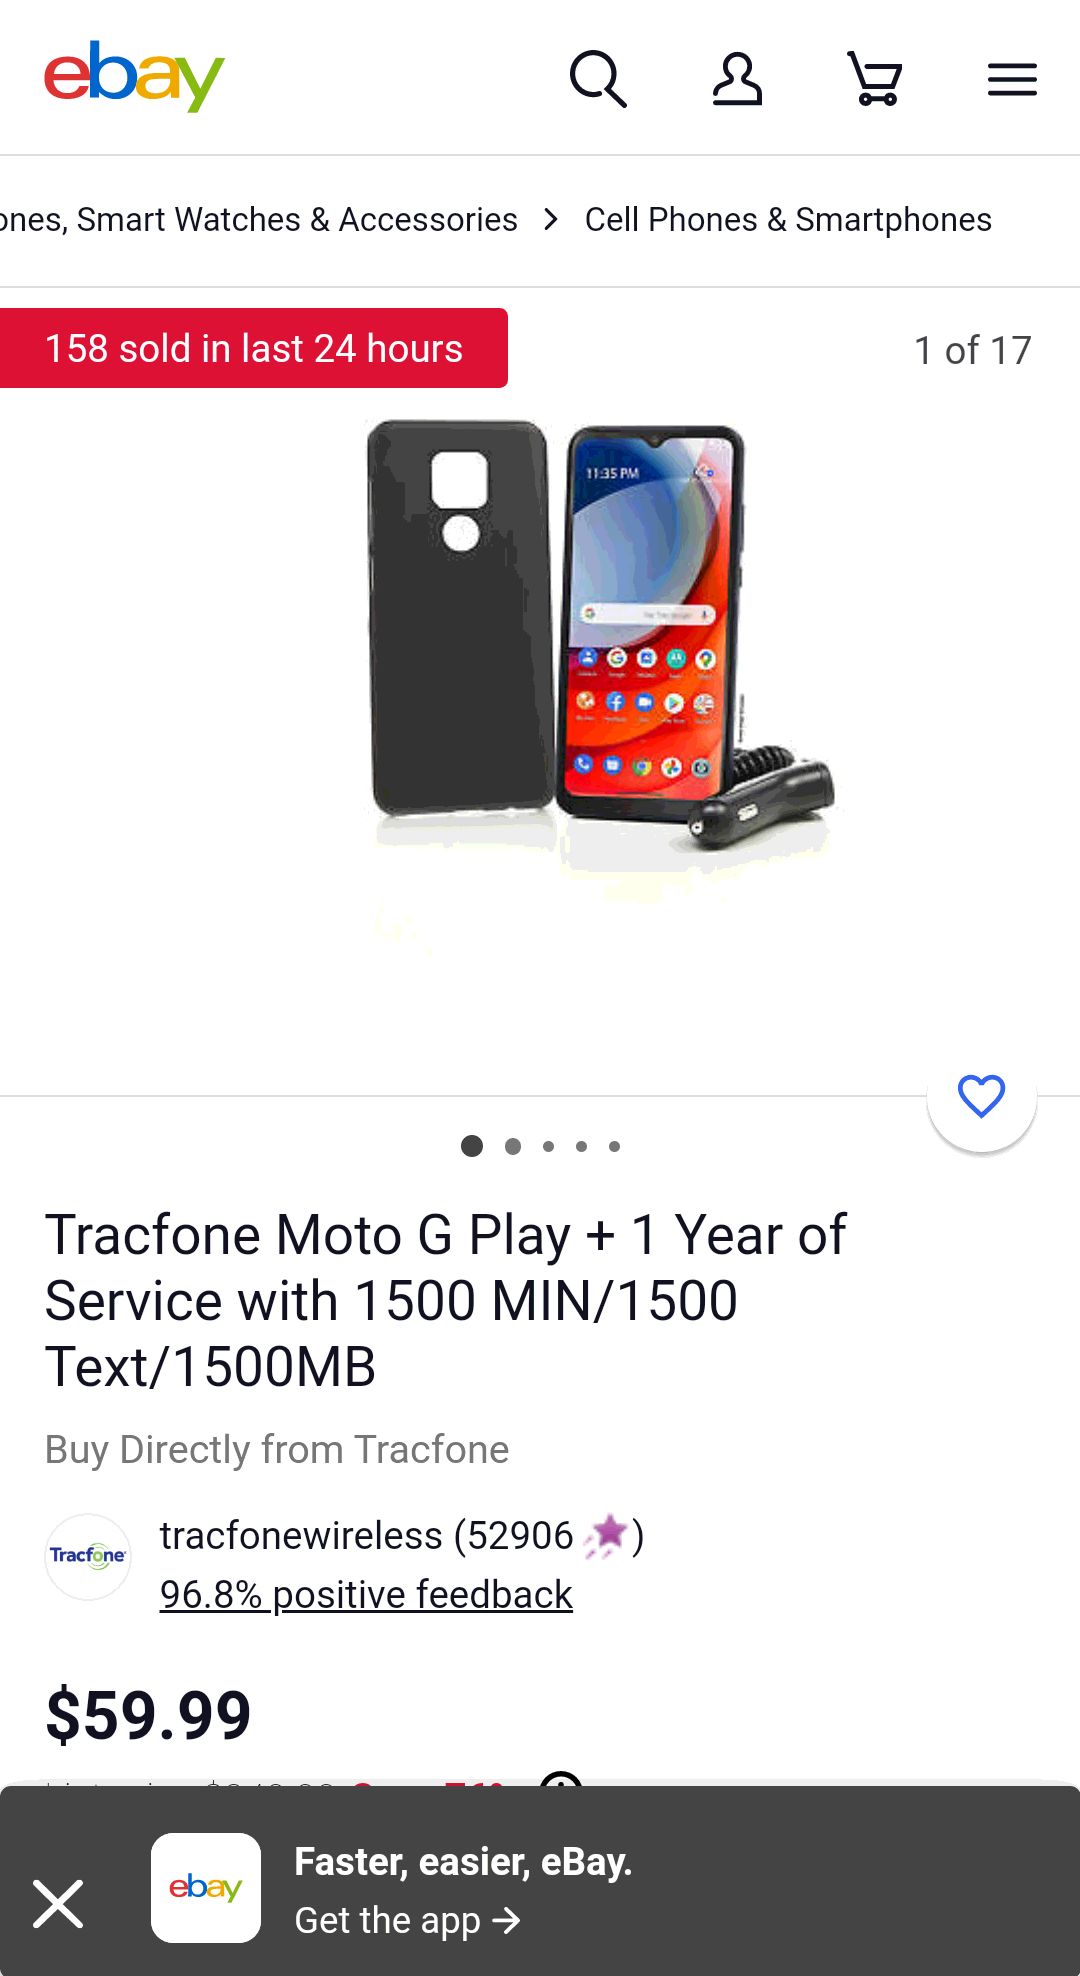 优惠:Tracfone Moto G Play + 1 Year of Service with 1500 MIN/1500 Text/1500MB | eBay